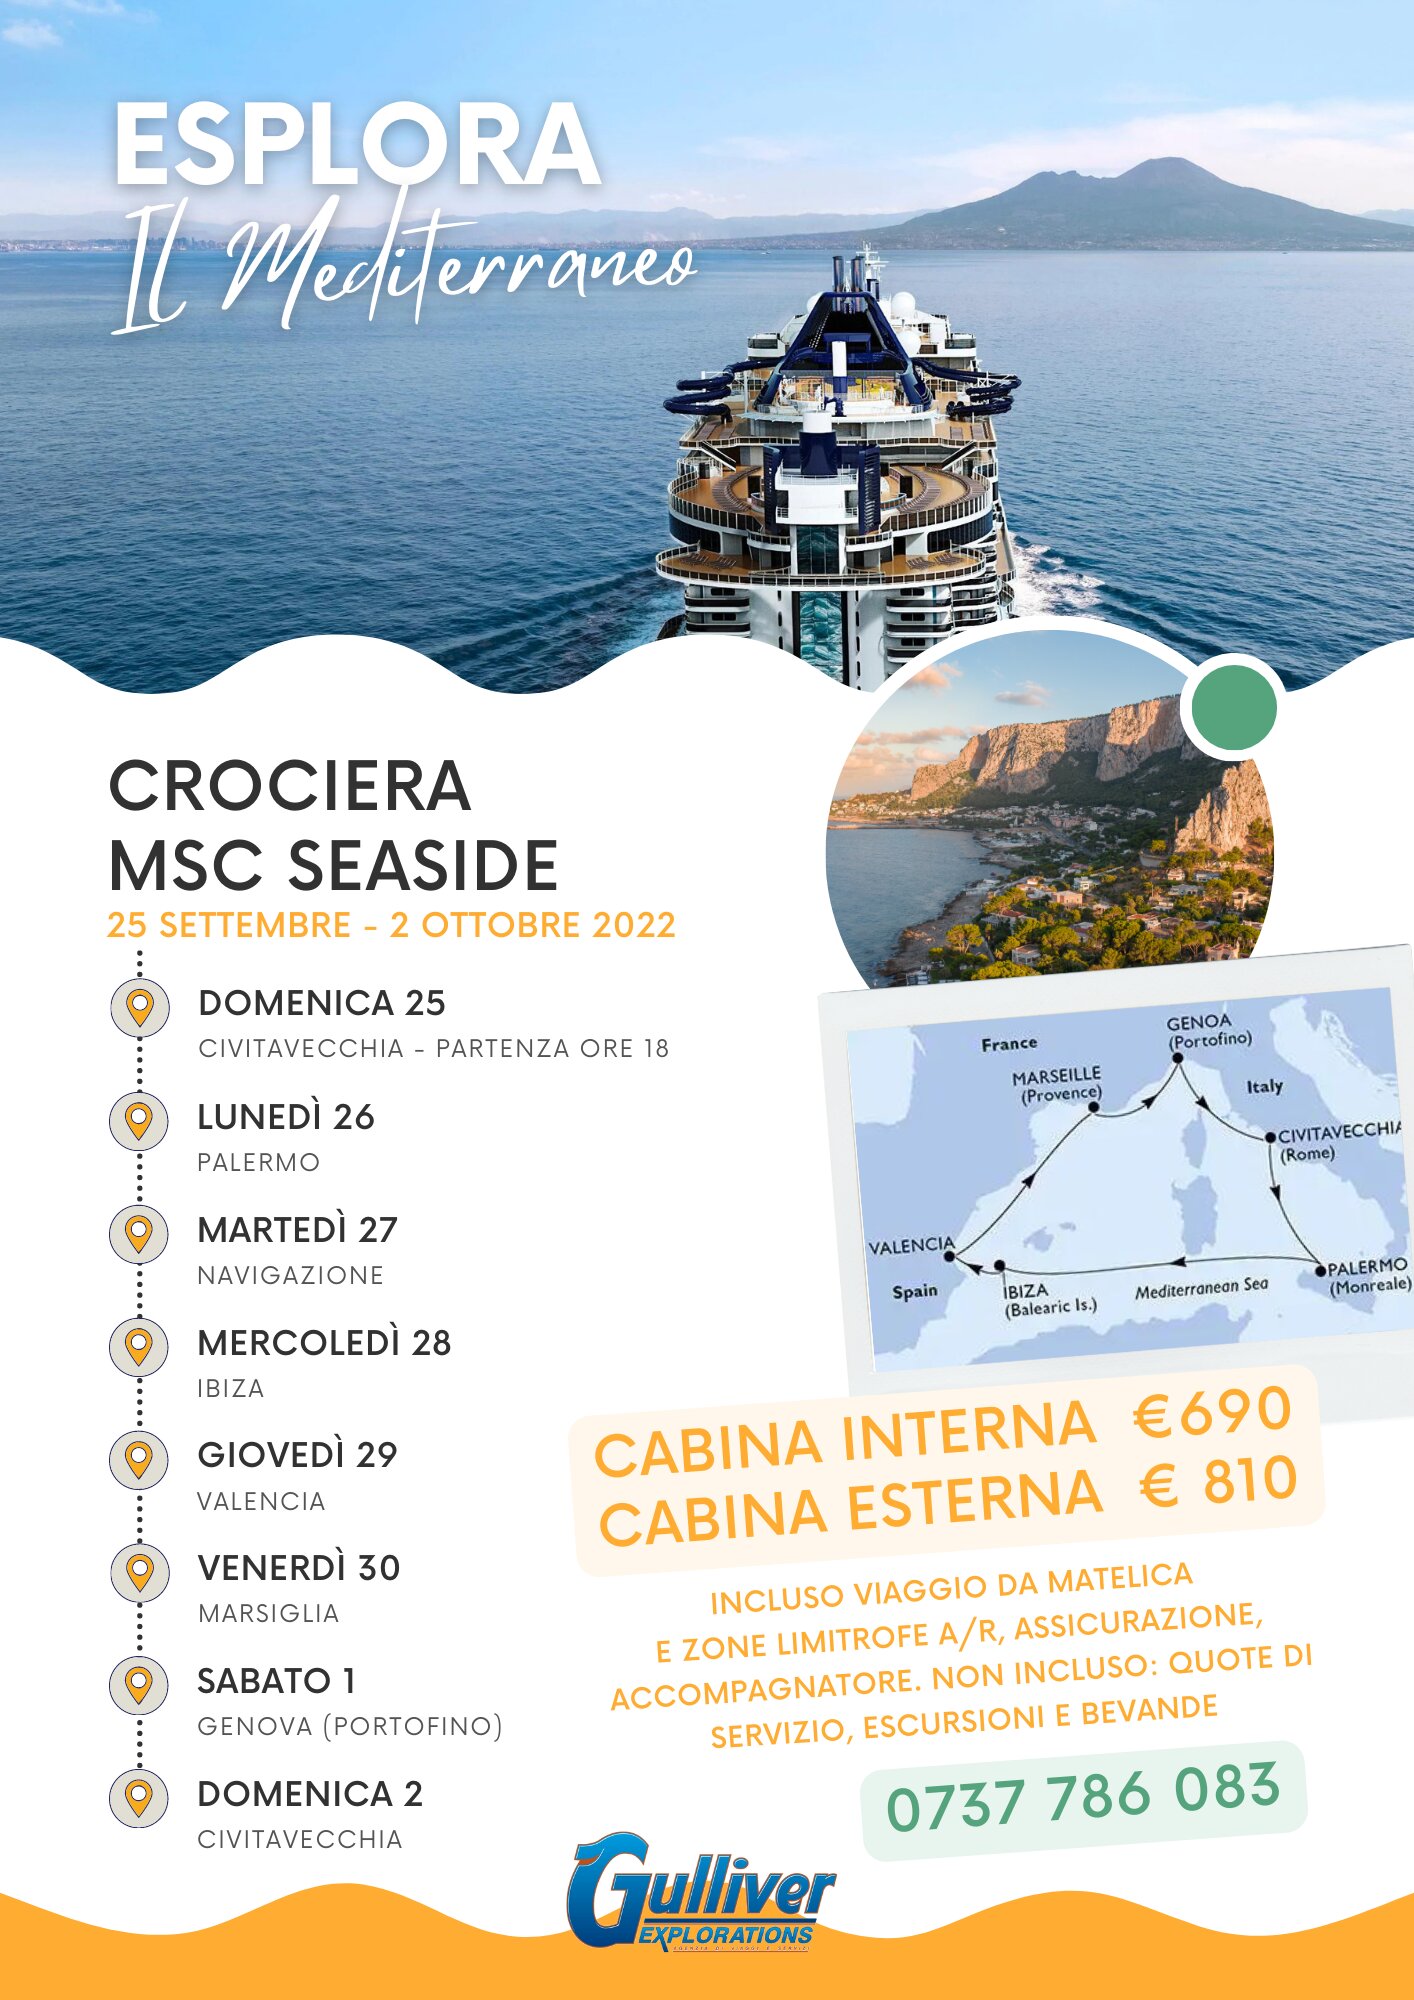 Msc Crociera 25 Settembre 2 Ottobre 2022 Mediterraneo